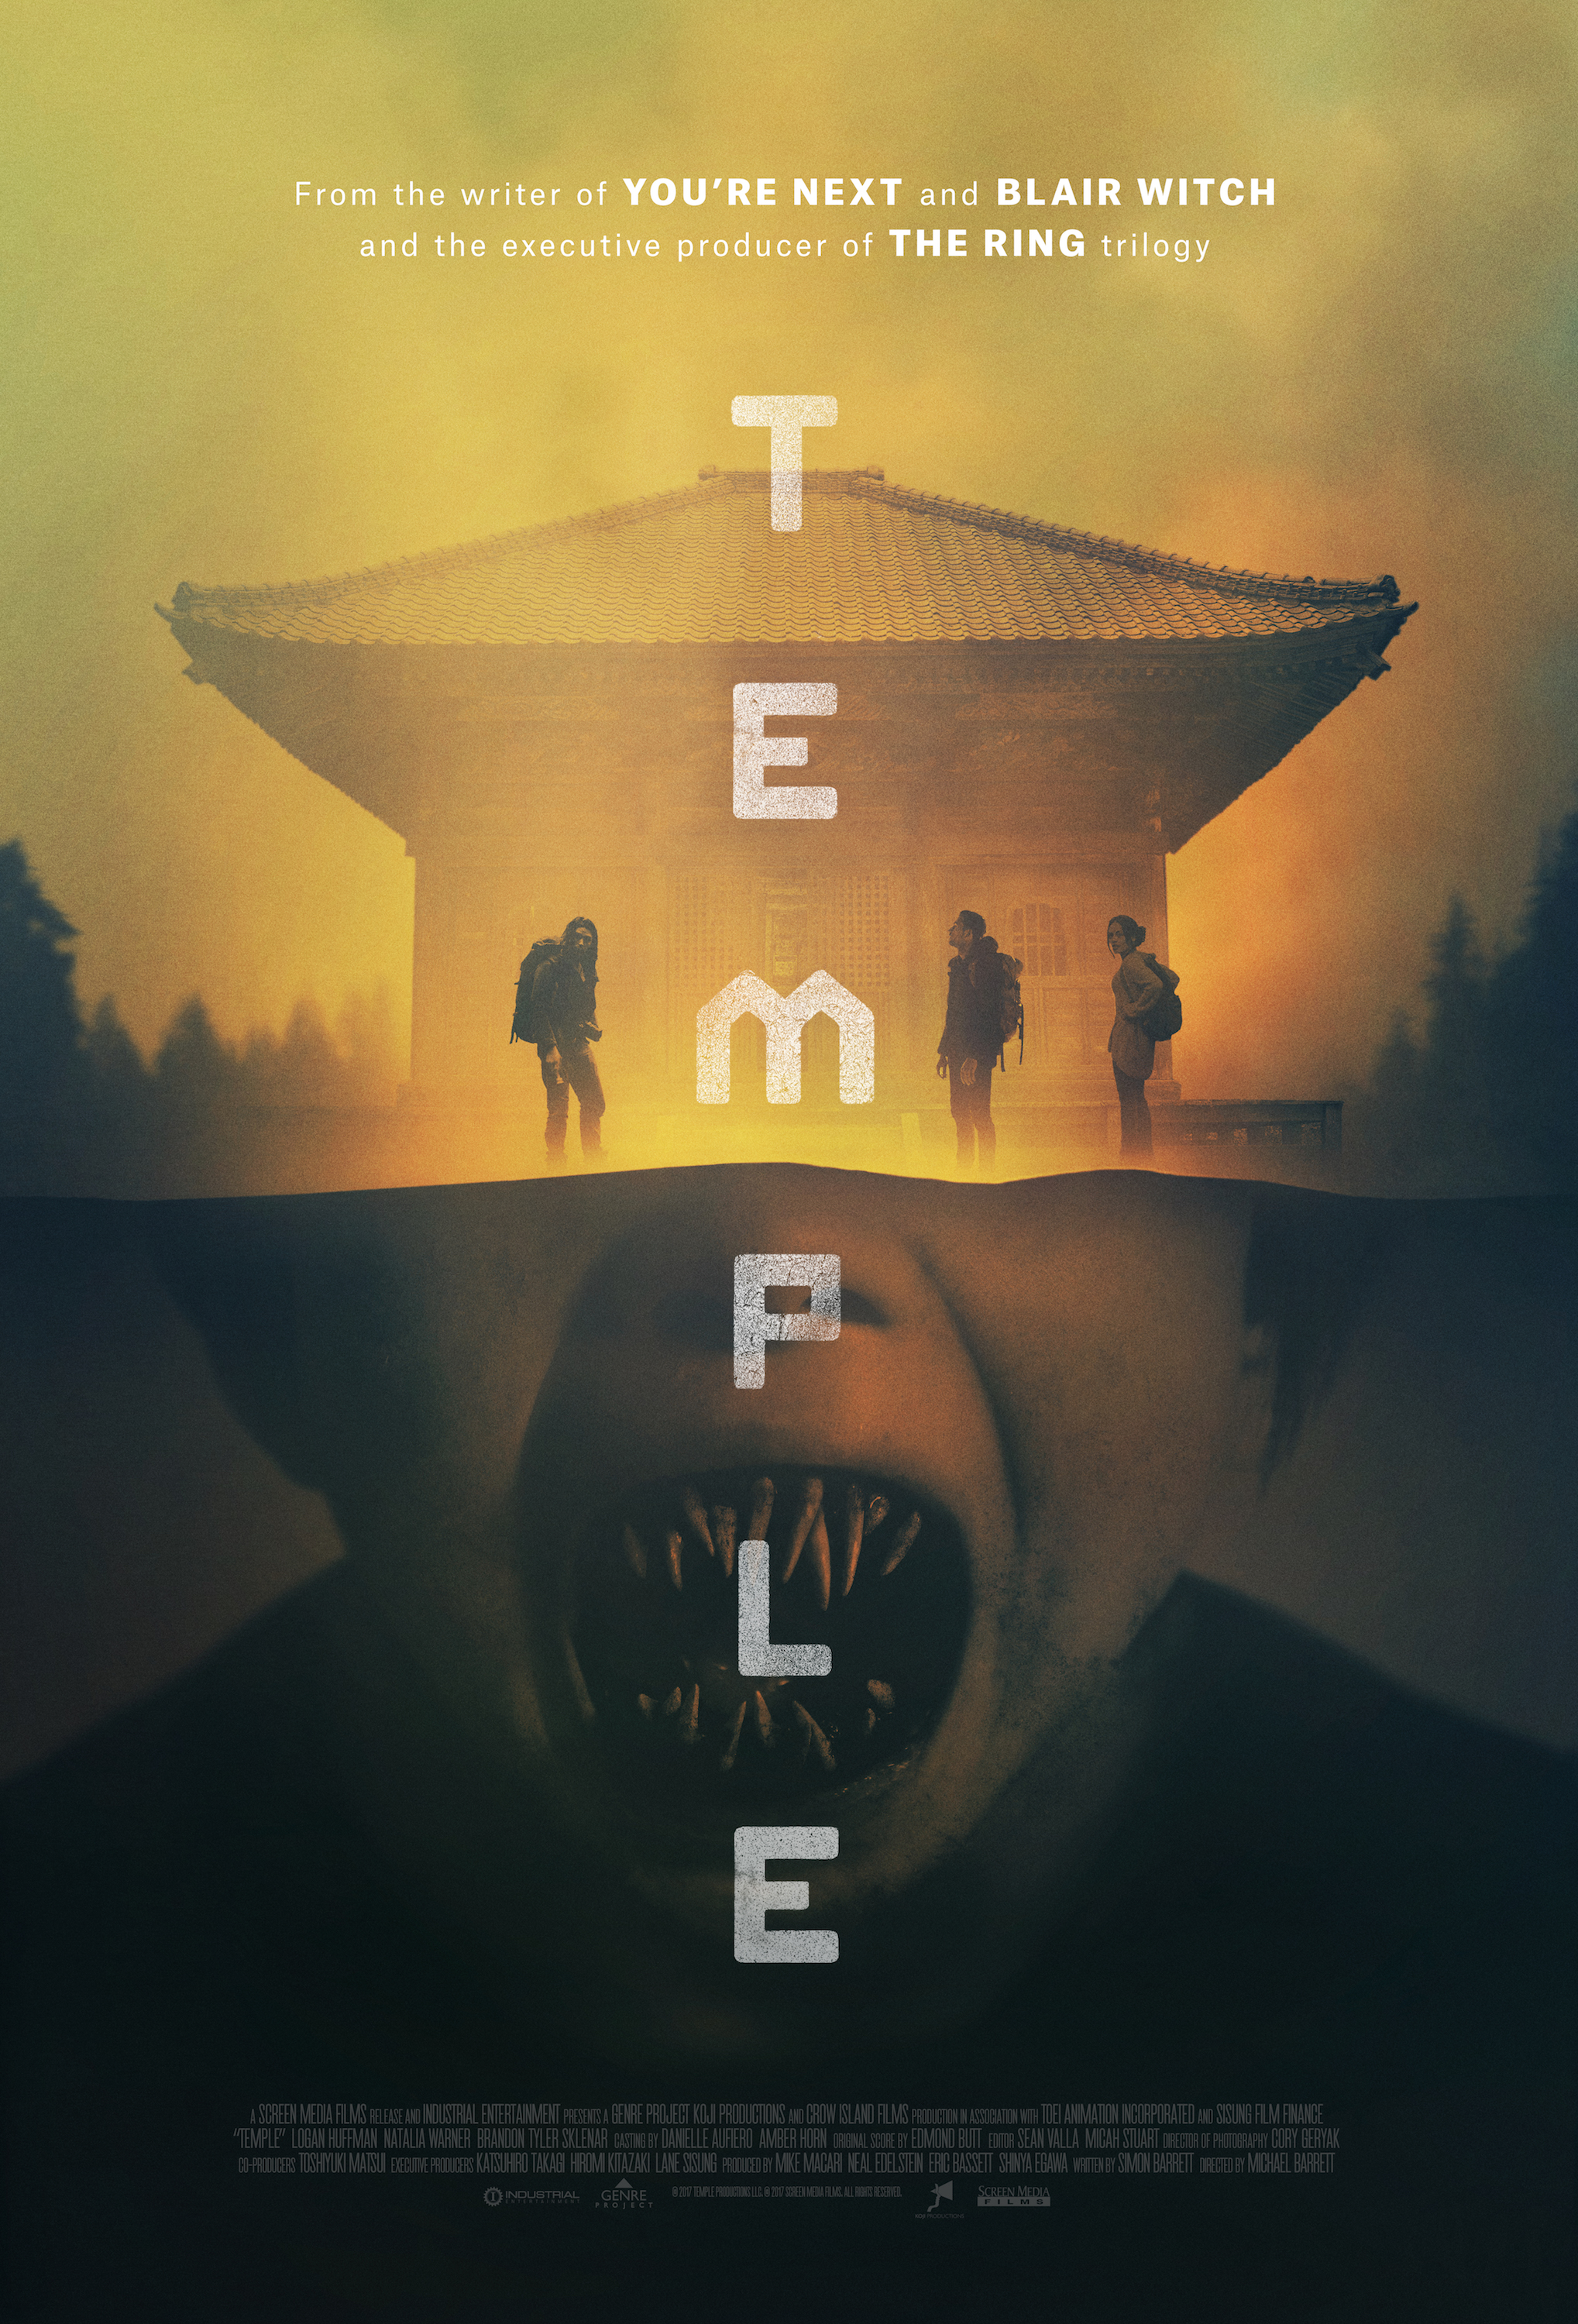 Nonton film Temple layarkaca21 indoxx1 ganool online streaming terbaru